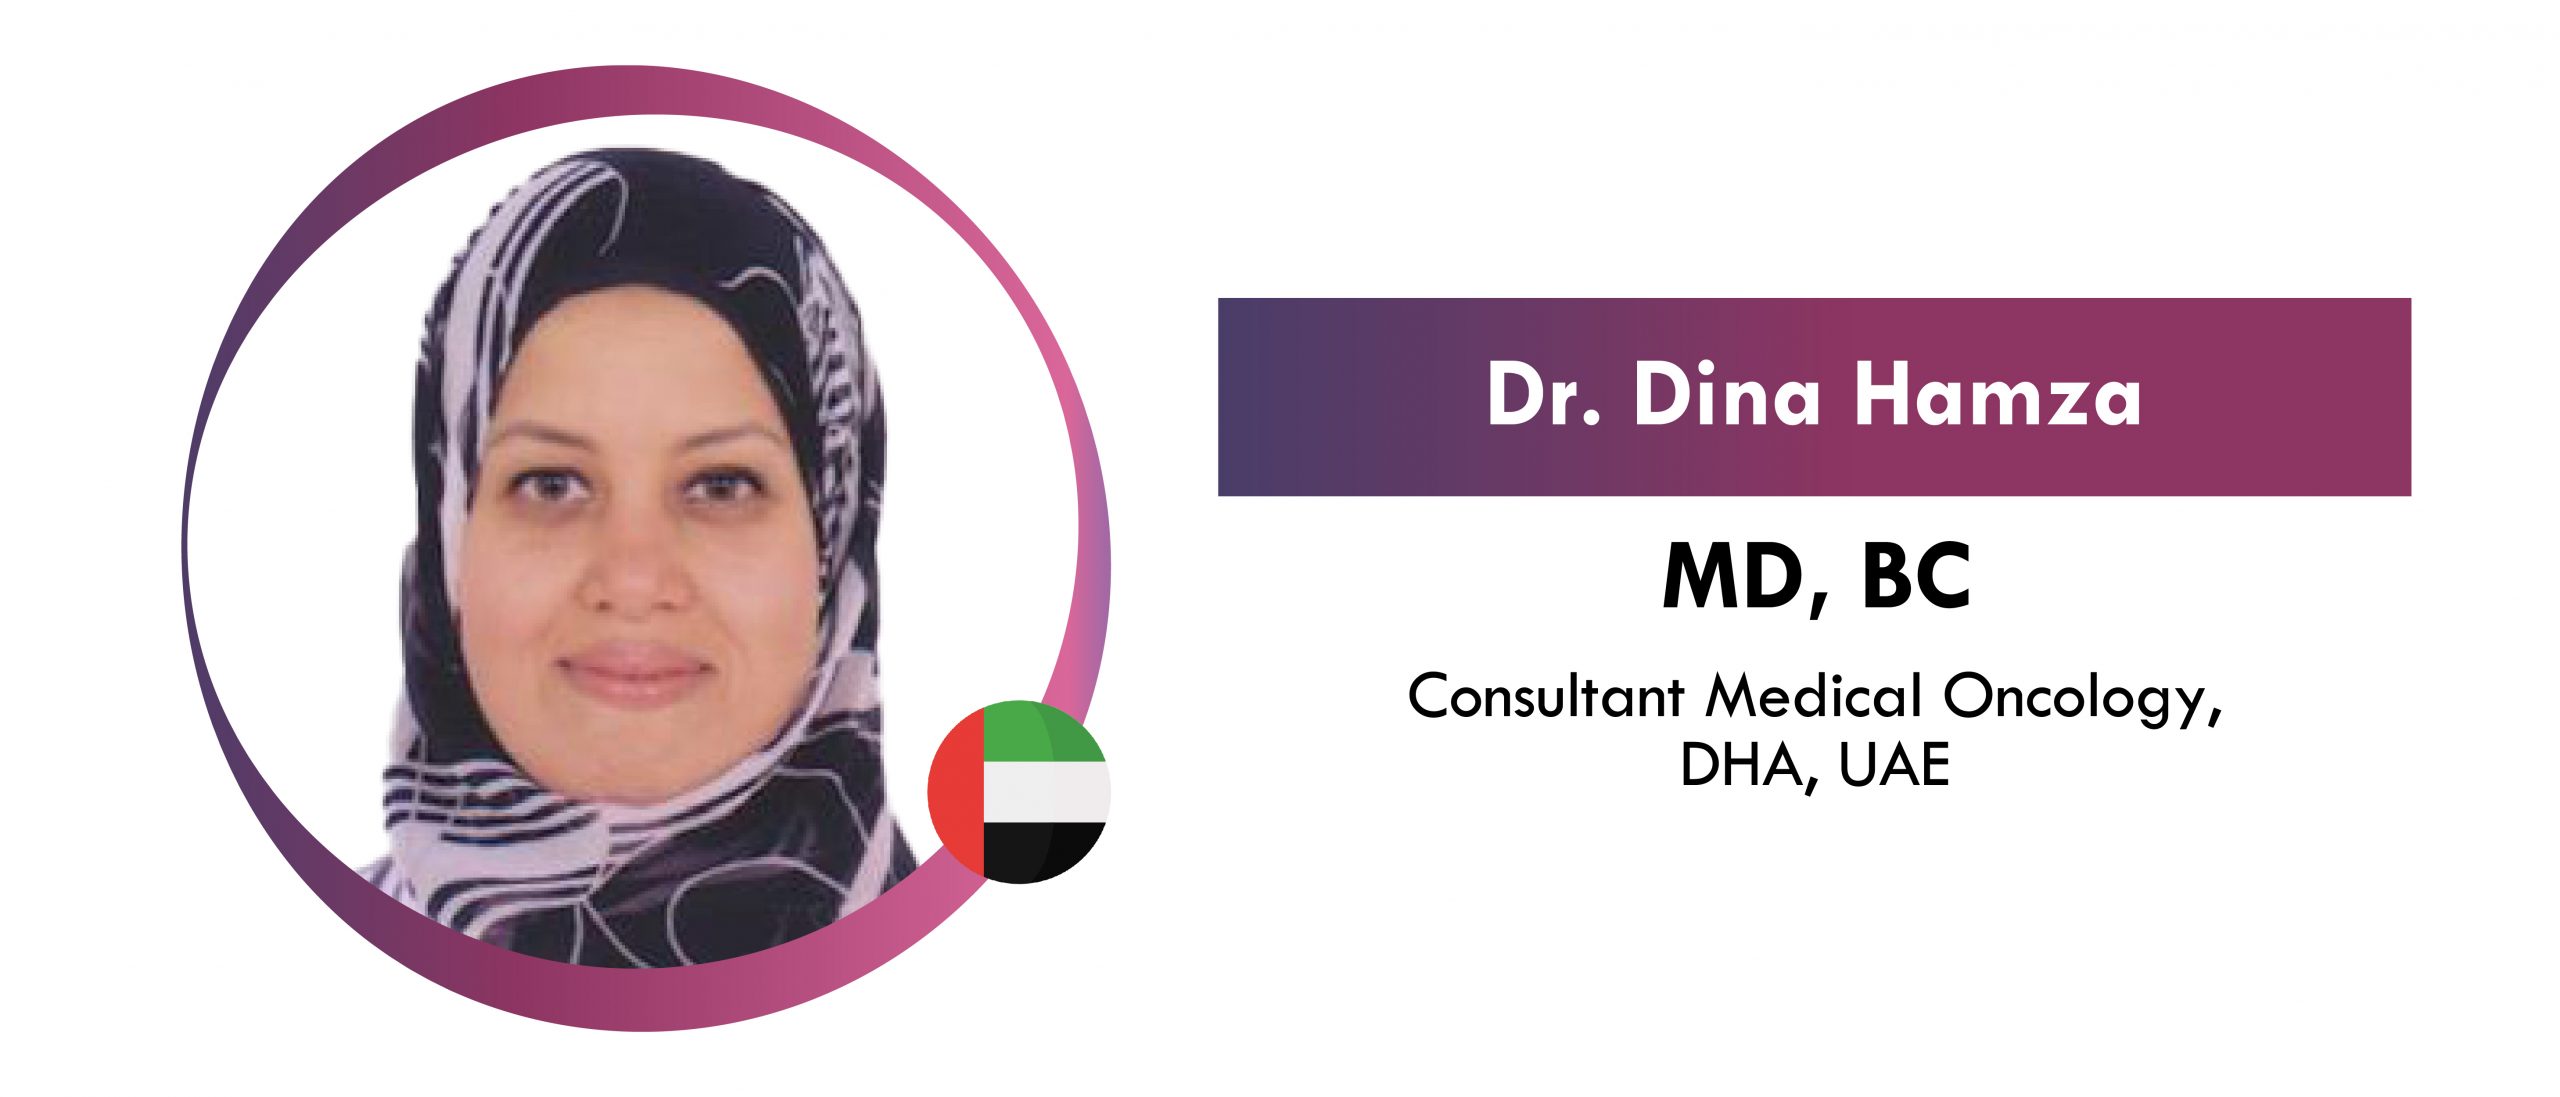 Dr. Dina Hamza